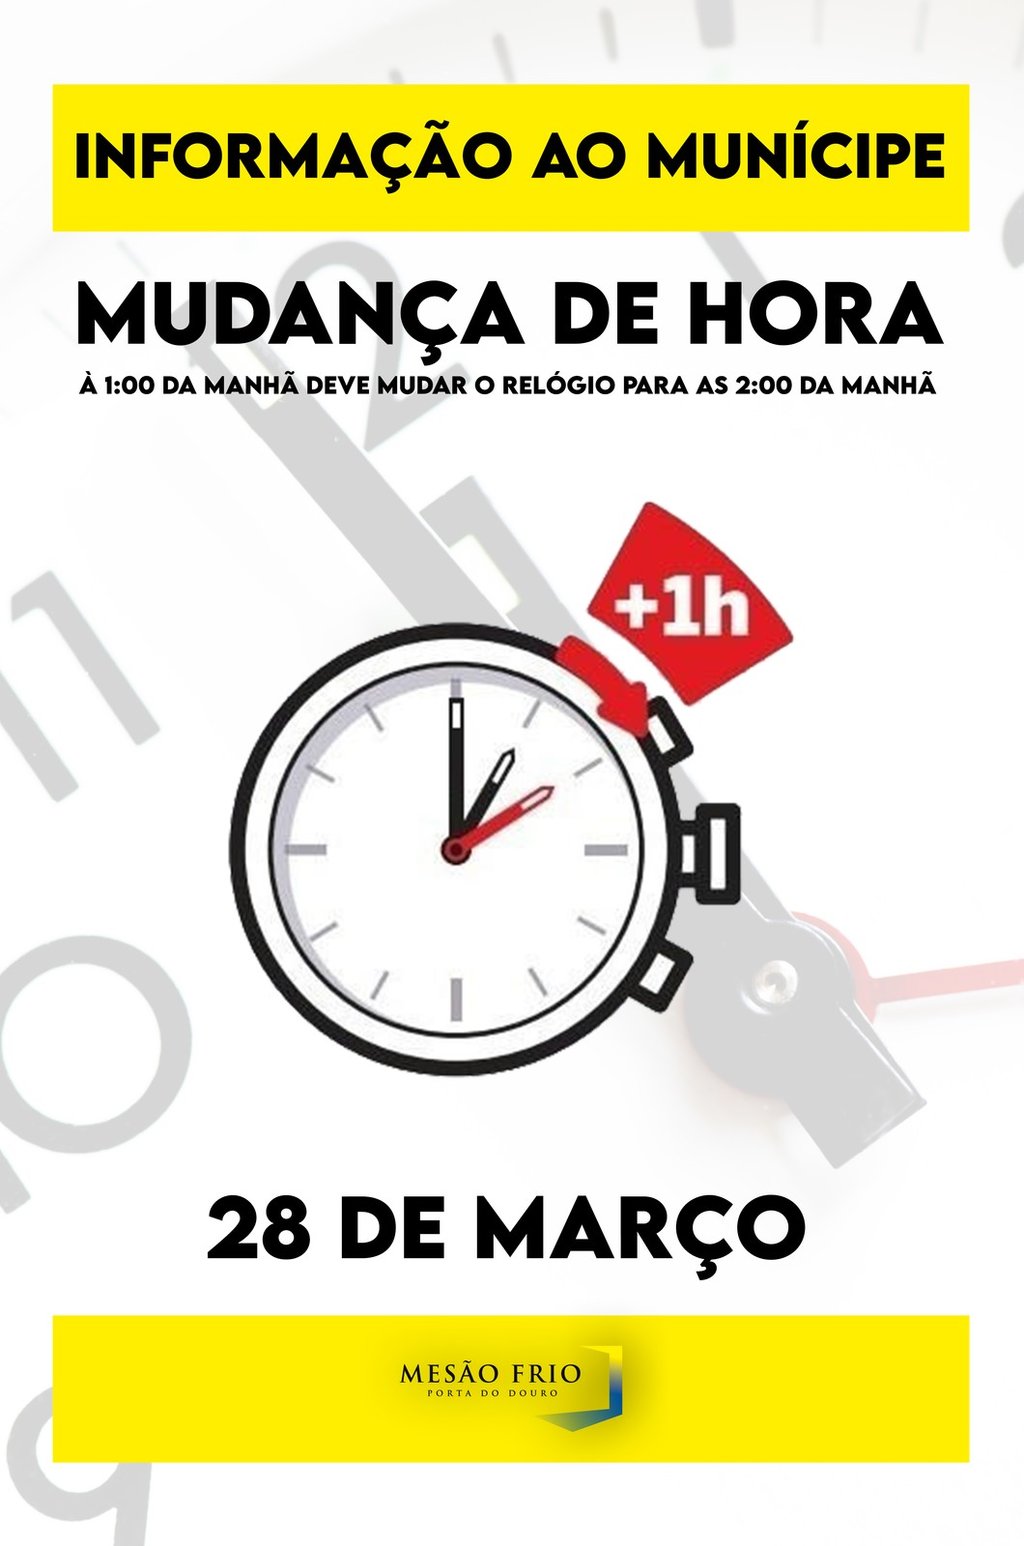 Lembrete | Mudança de Hora em Portugal